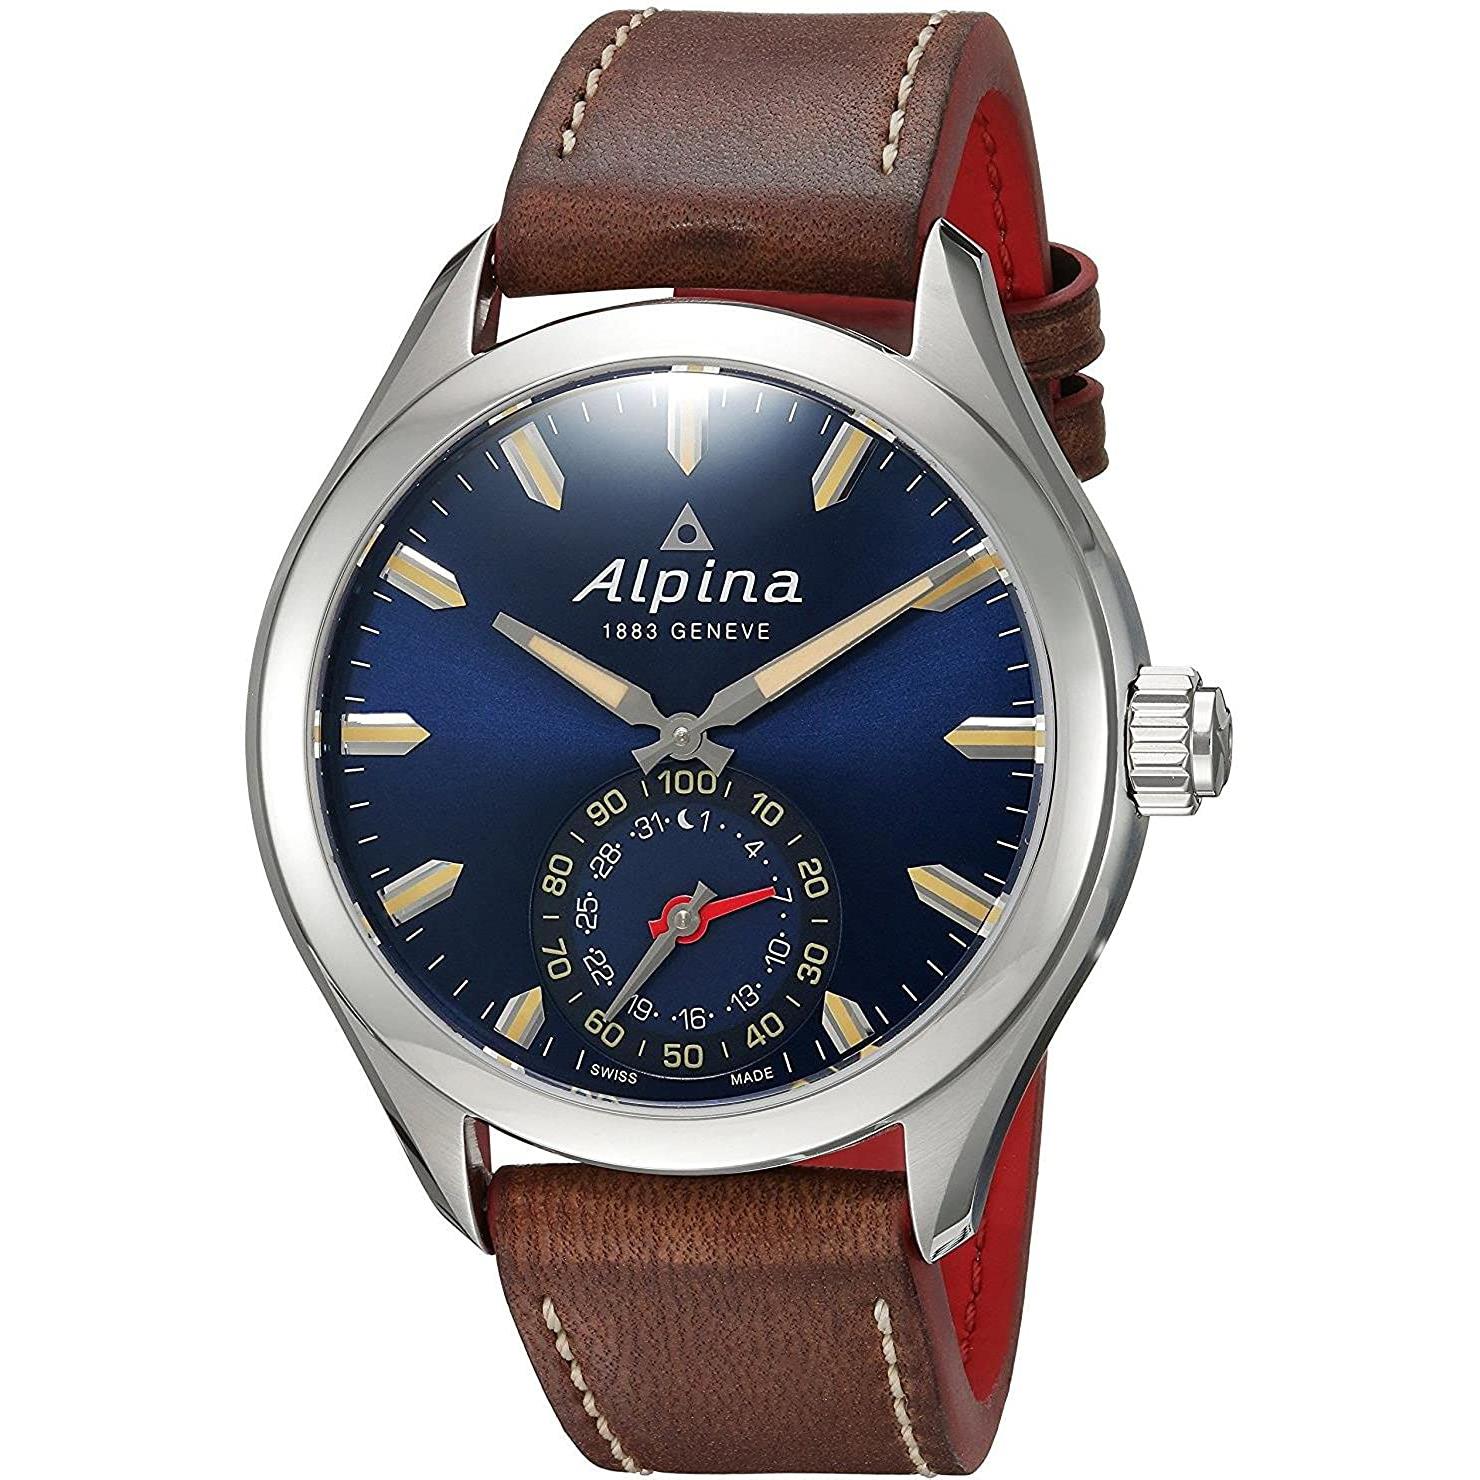 ساعت مچی آلپینا  ALPINA کد AL-285NS5AQ6